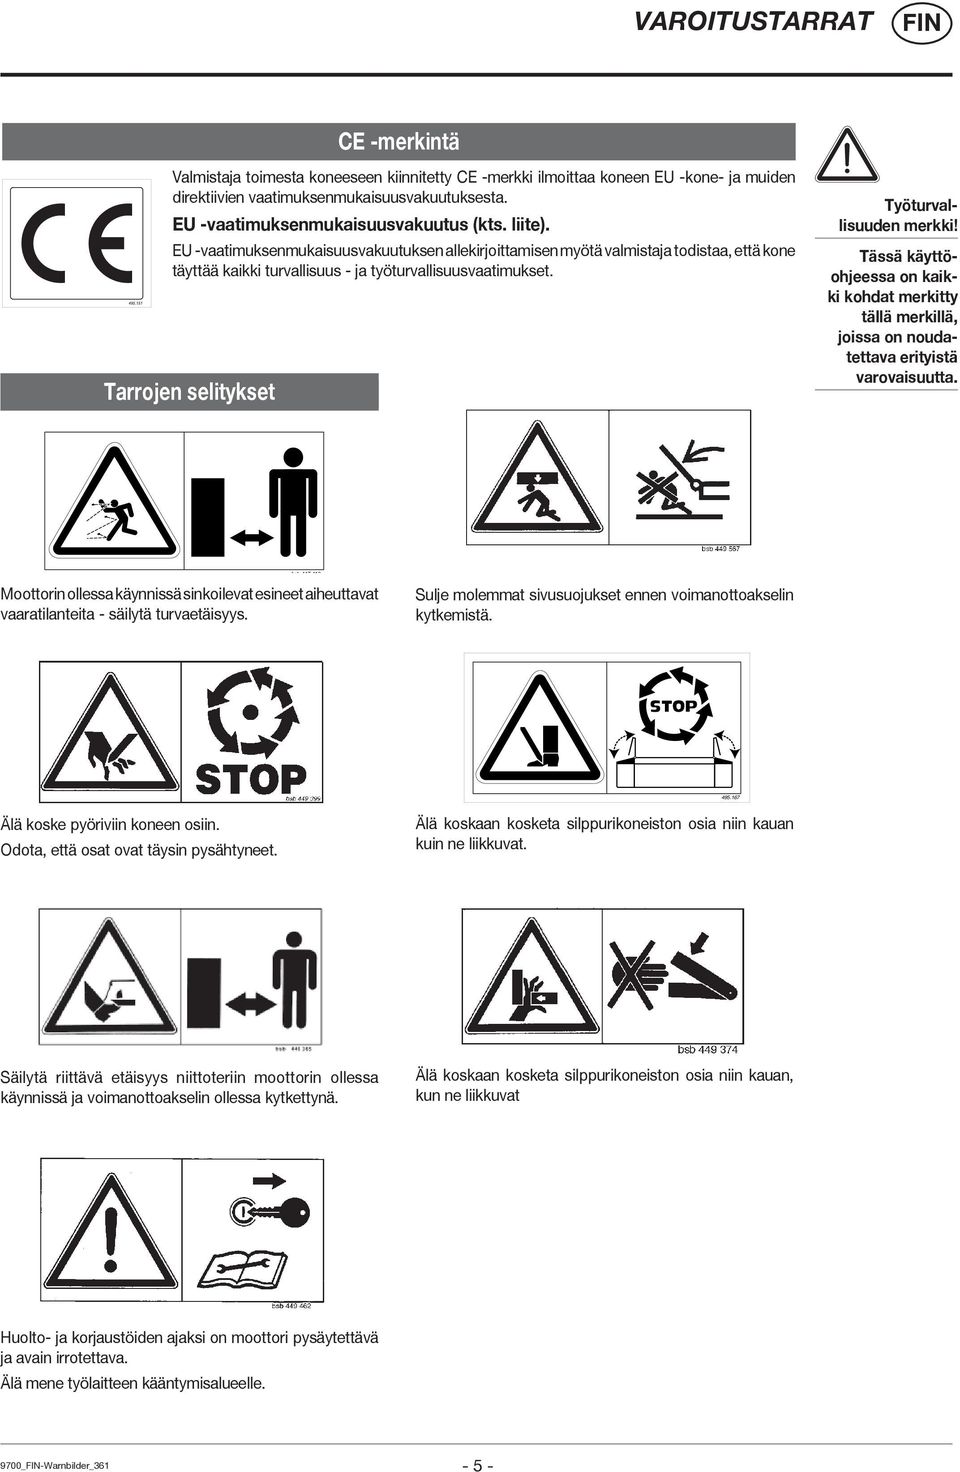 Tarrojen selitykset Työturvallisuuden merkki! Tässä käyttöohjeessa on kaikki kohdat merkitty tällä merkillä, joissa on noudatettava erityistä varovaisuutta.